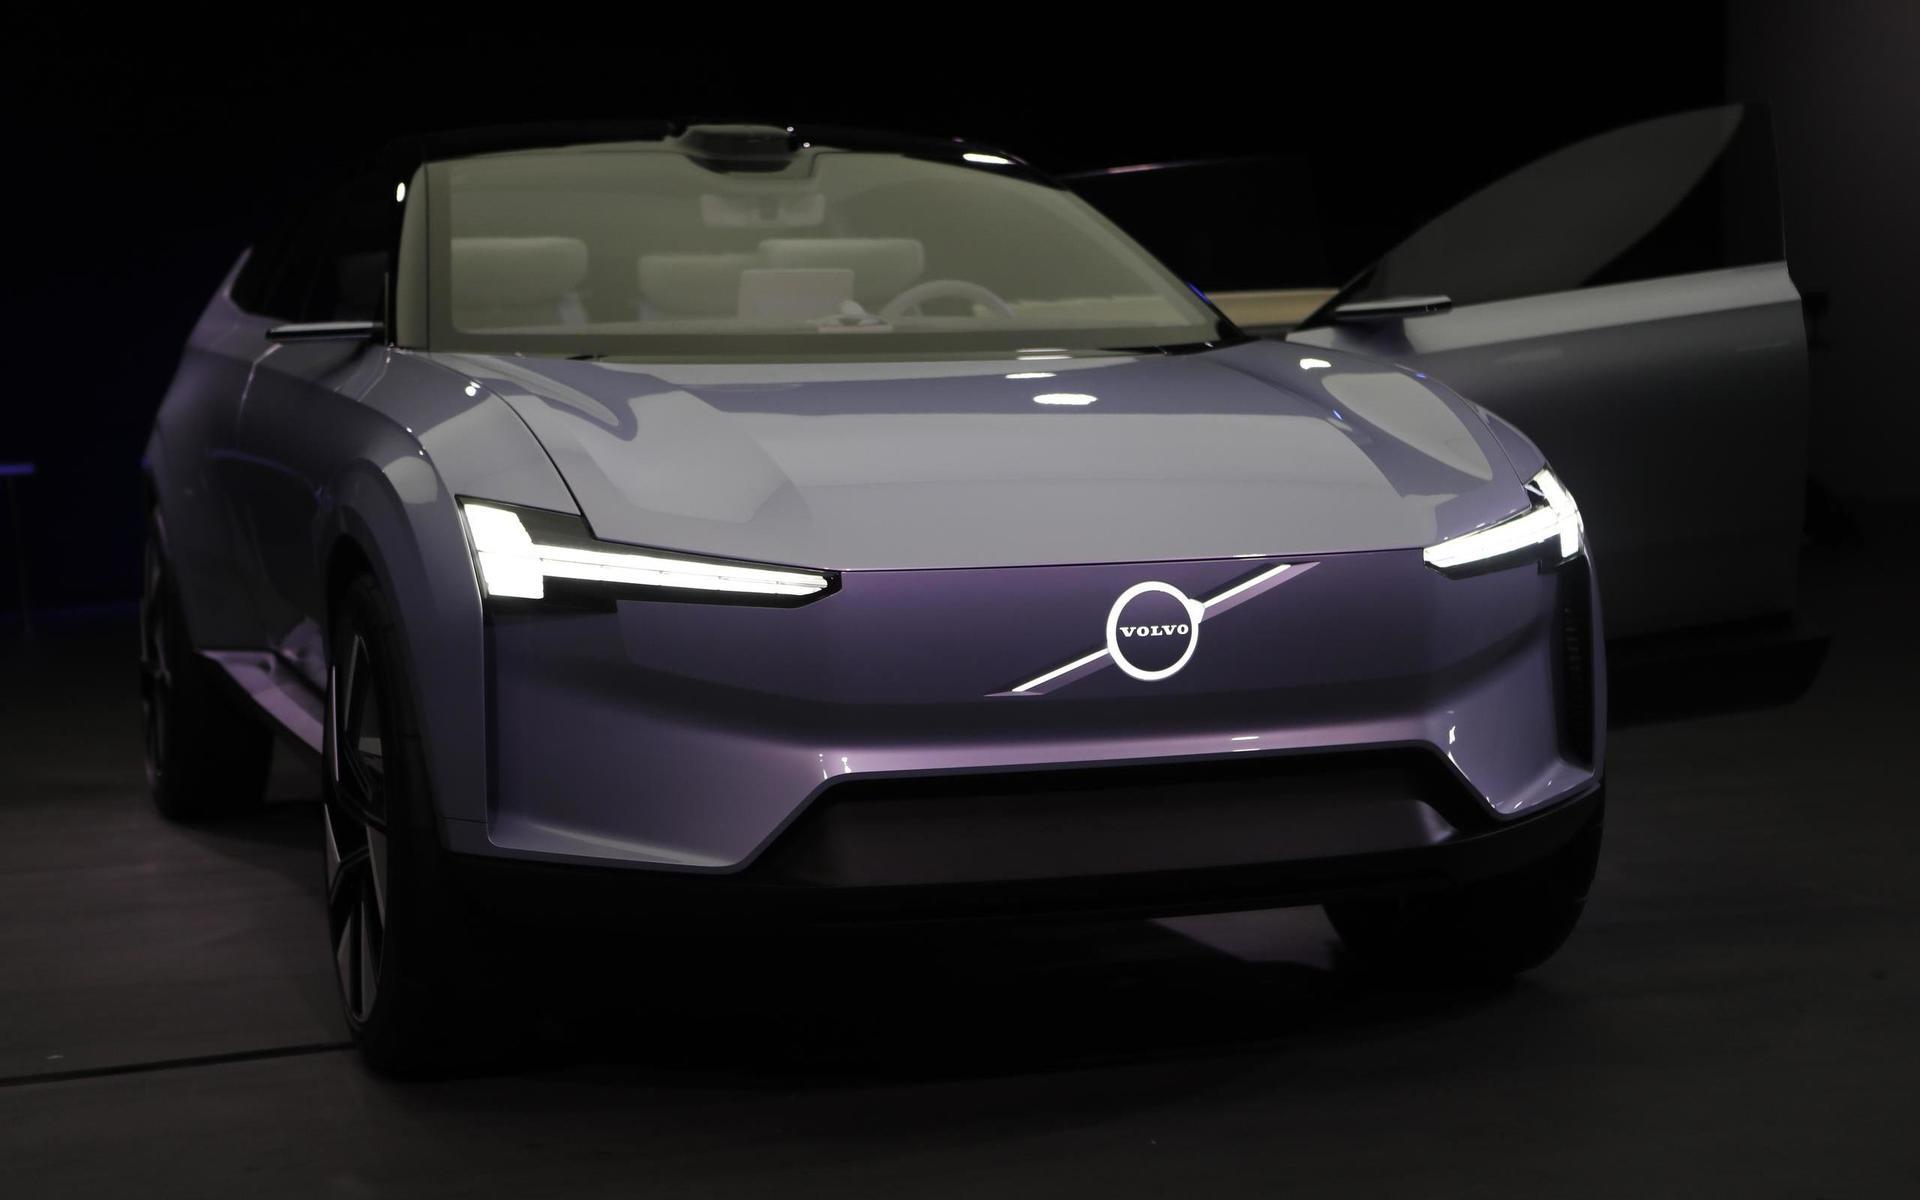 Volvos Concept Recharge visar en elbil med sportig front, som saknar den typ av grill som bilar med förbränningsmotor har. Man fortsätter linjen med ett ”skandinaviskt”, minimalistiskt designspråk. 